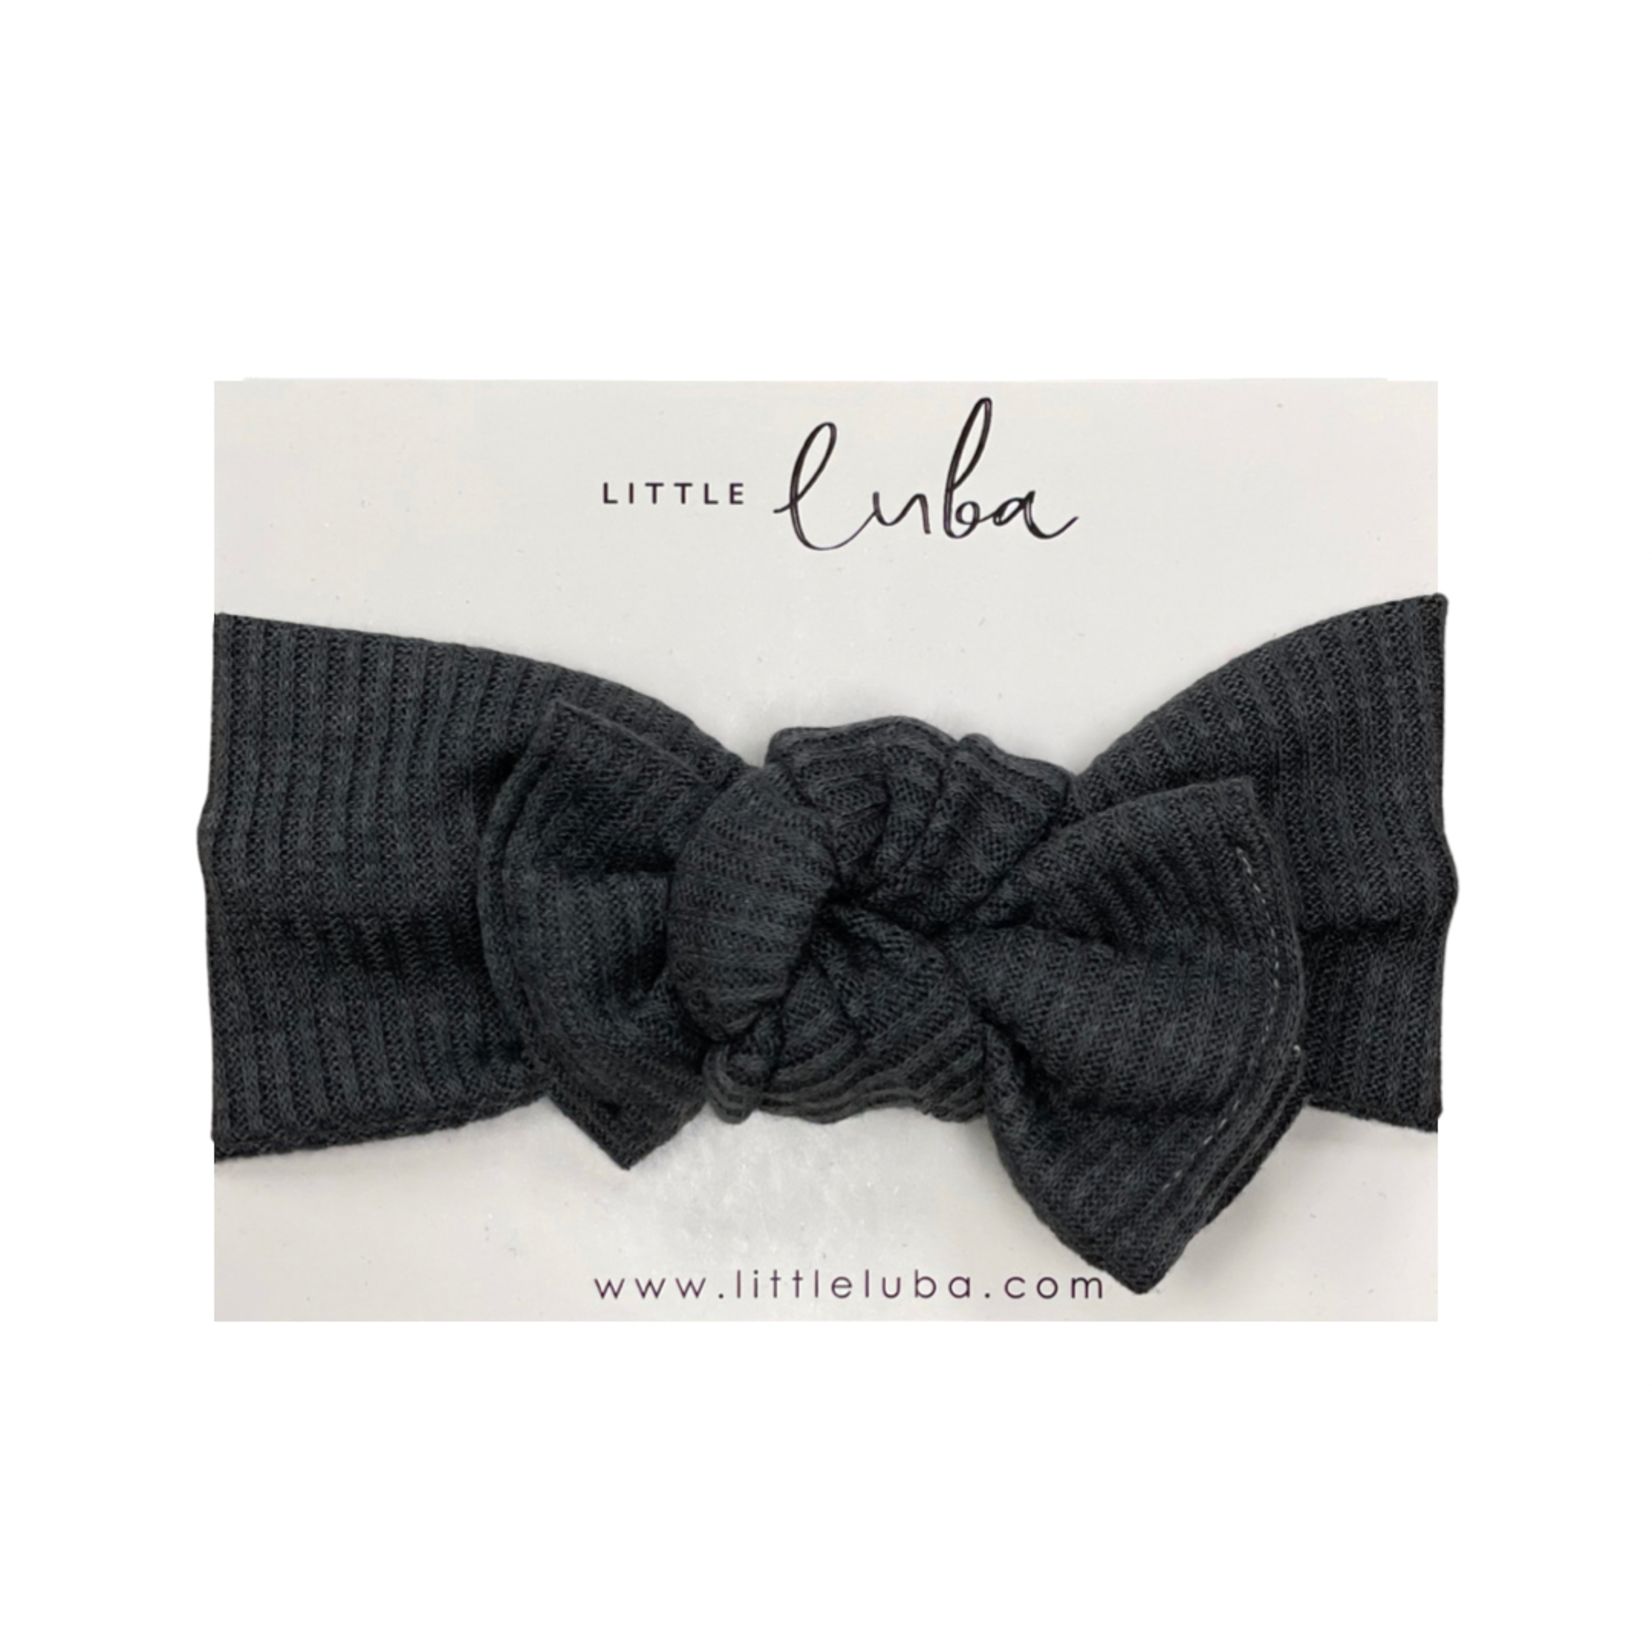 Little Luba Little Luba - Tie-On Headwraps